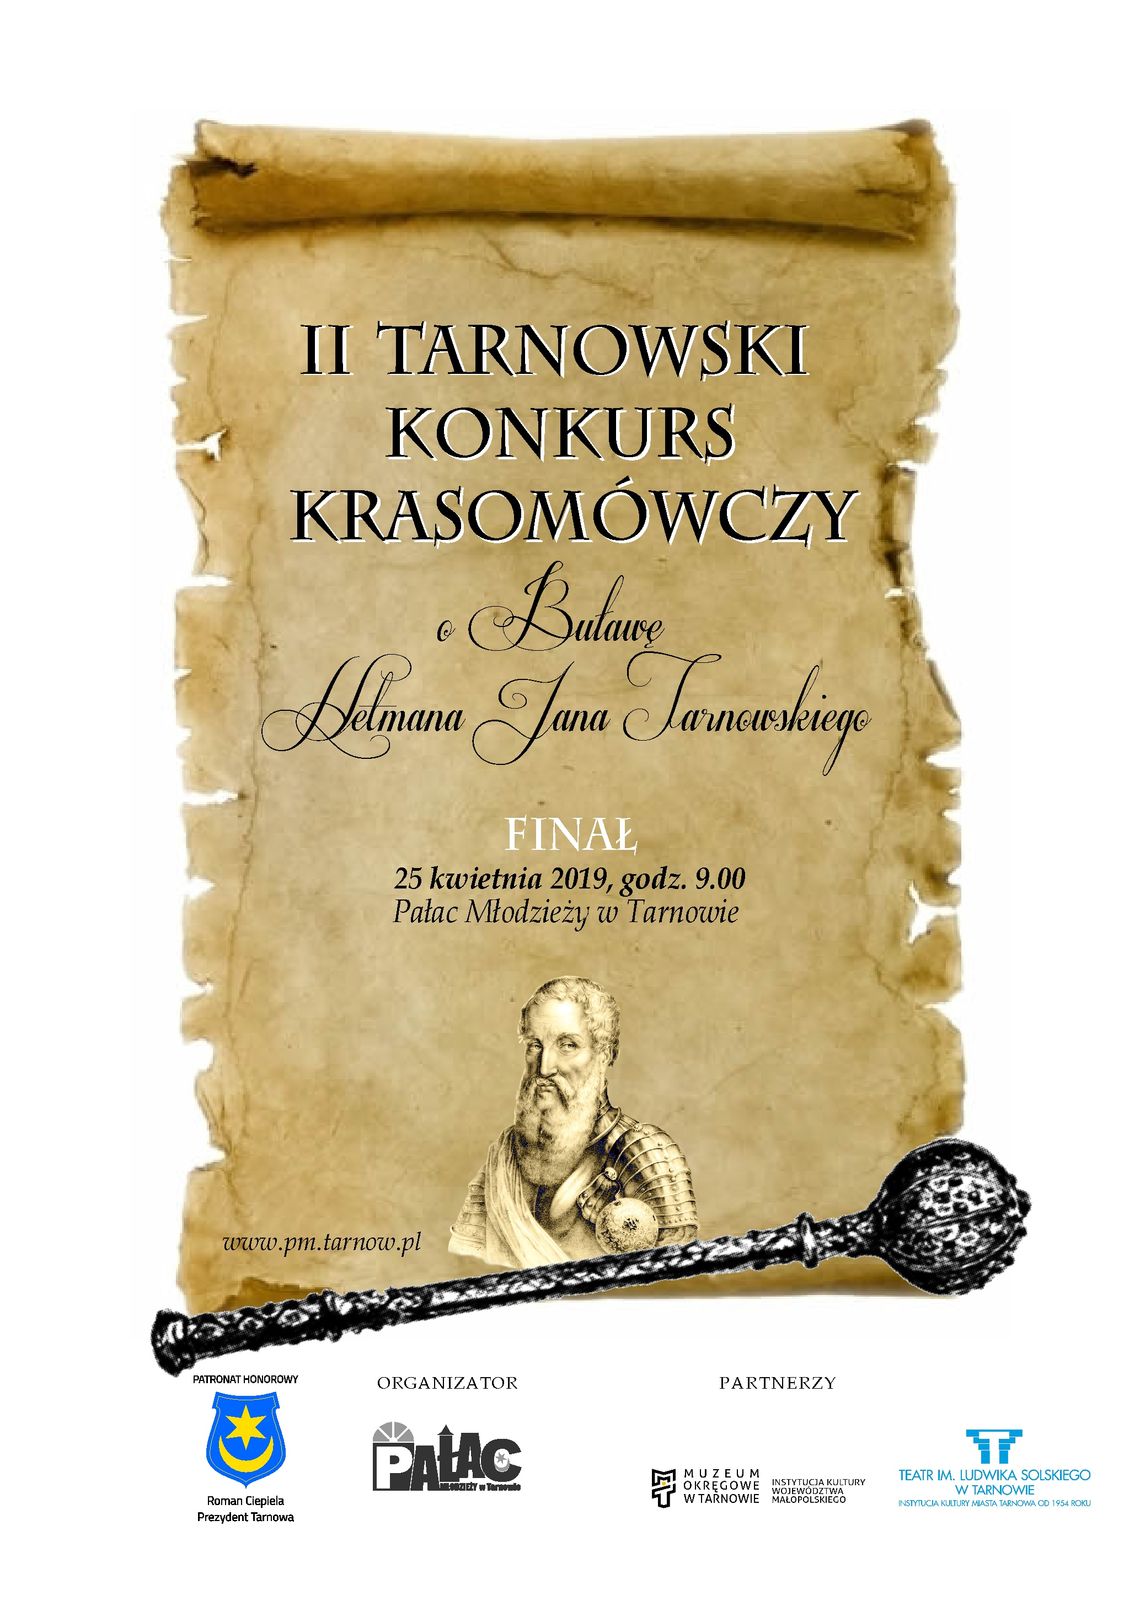 II Tarnowski Krasomówczy „O Buławę Hetmana Jana Tarnowskiego”